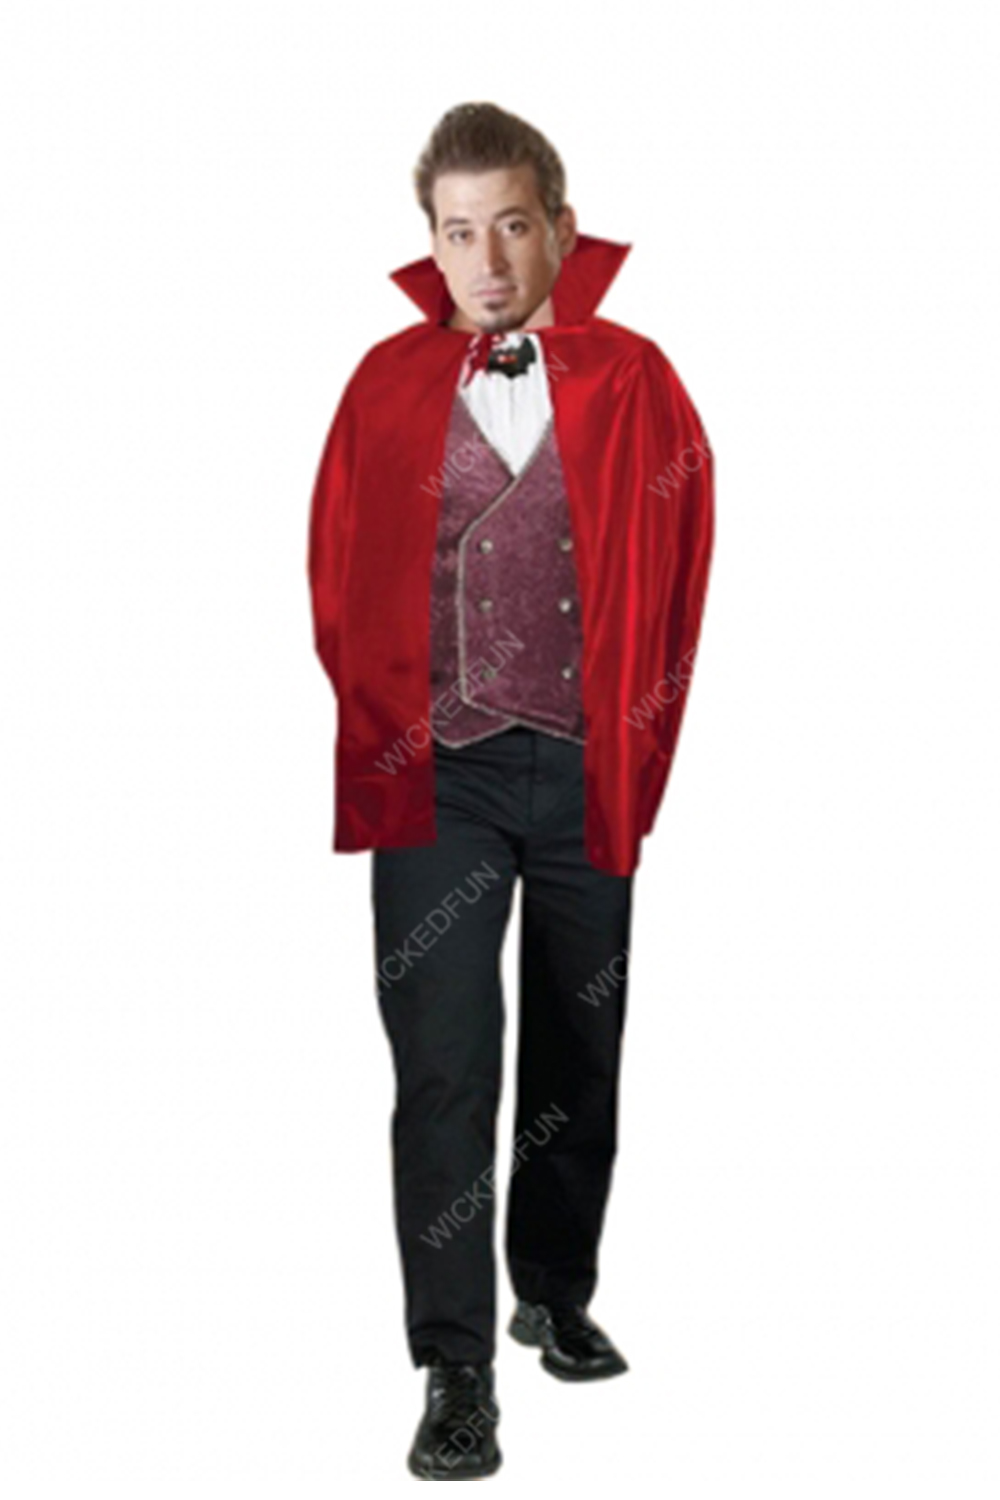 Wickedfun Red Halloween Cape Costume (34 Inches)